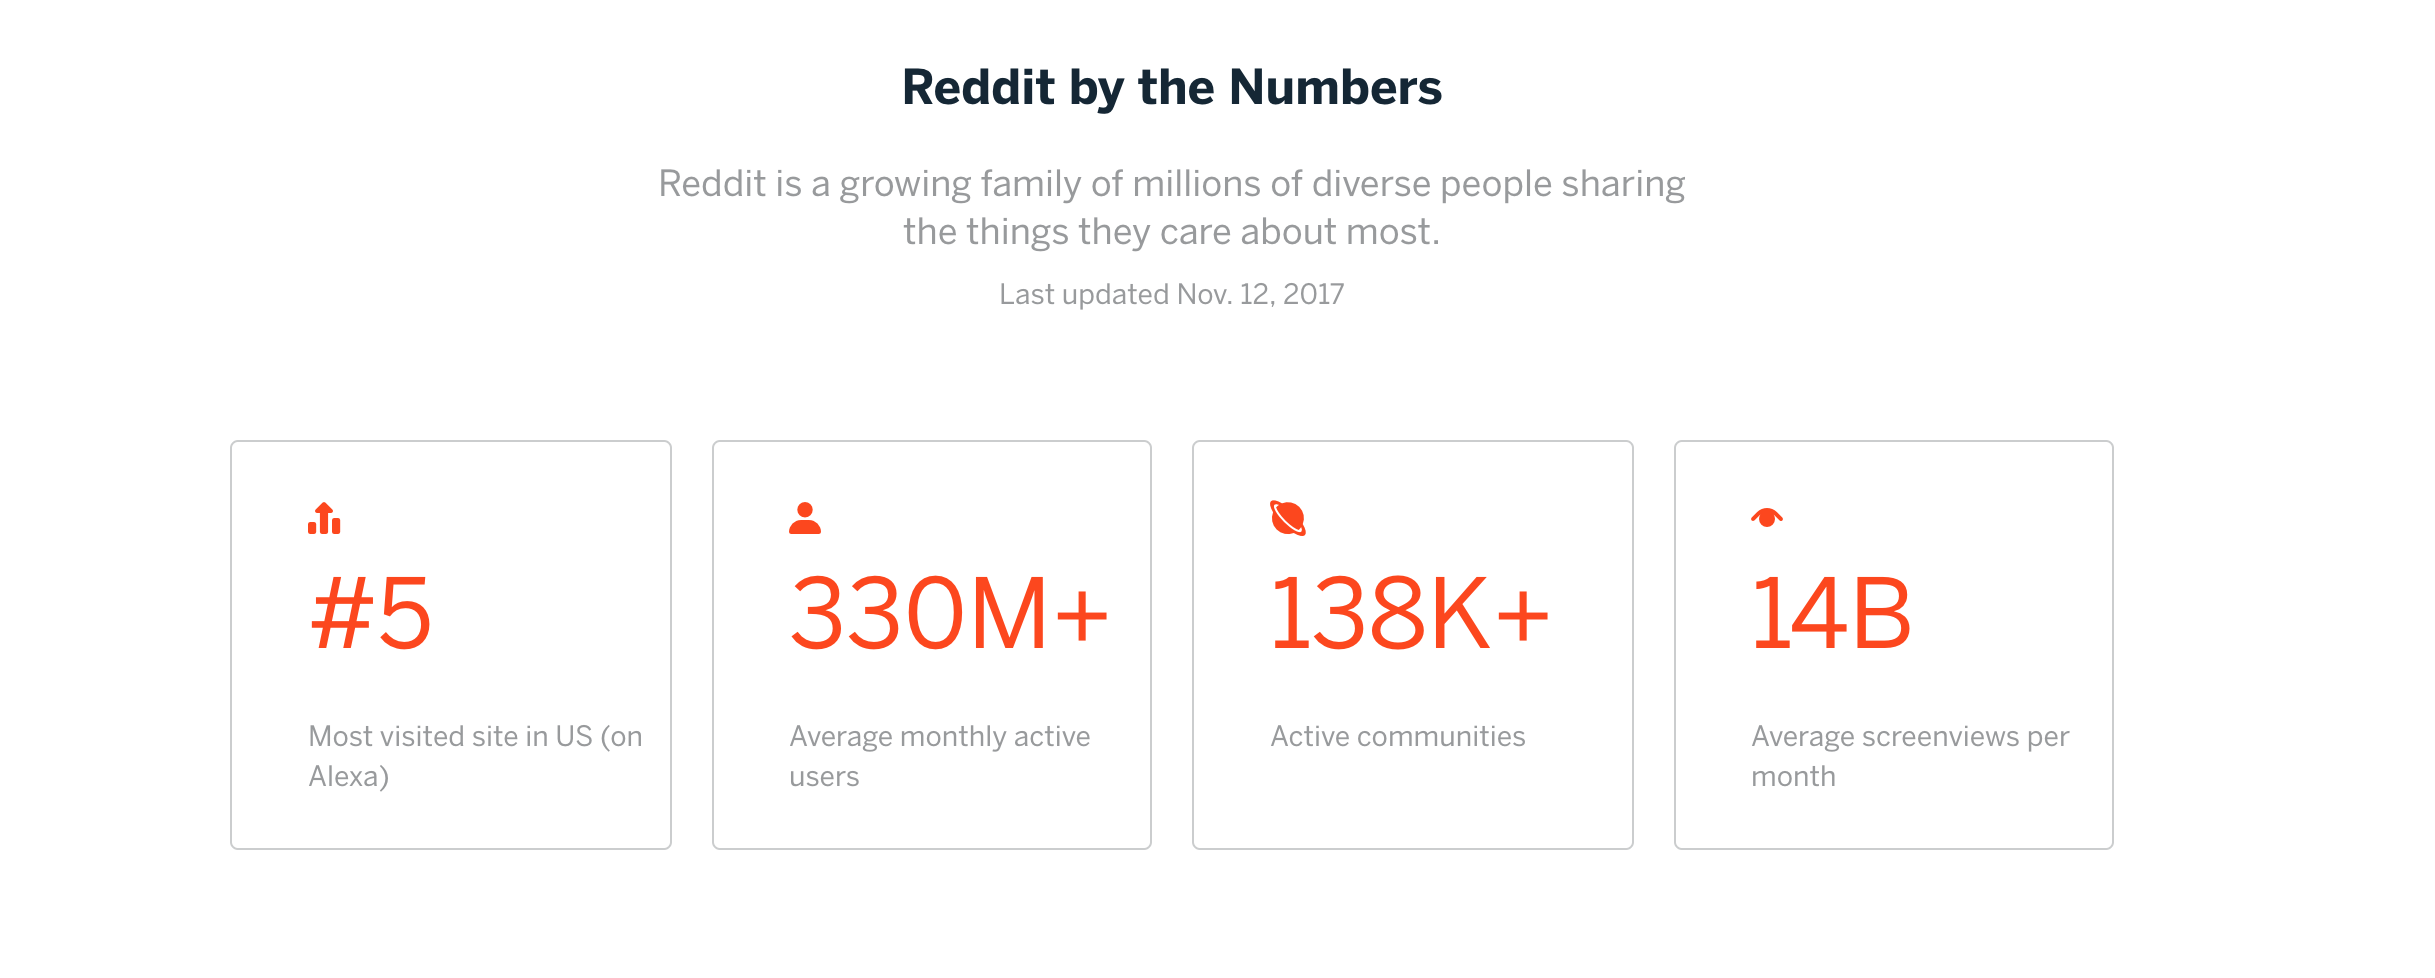 Reddit by numbers